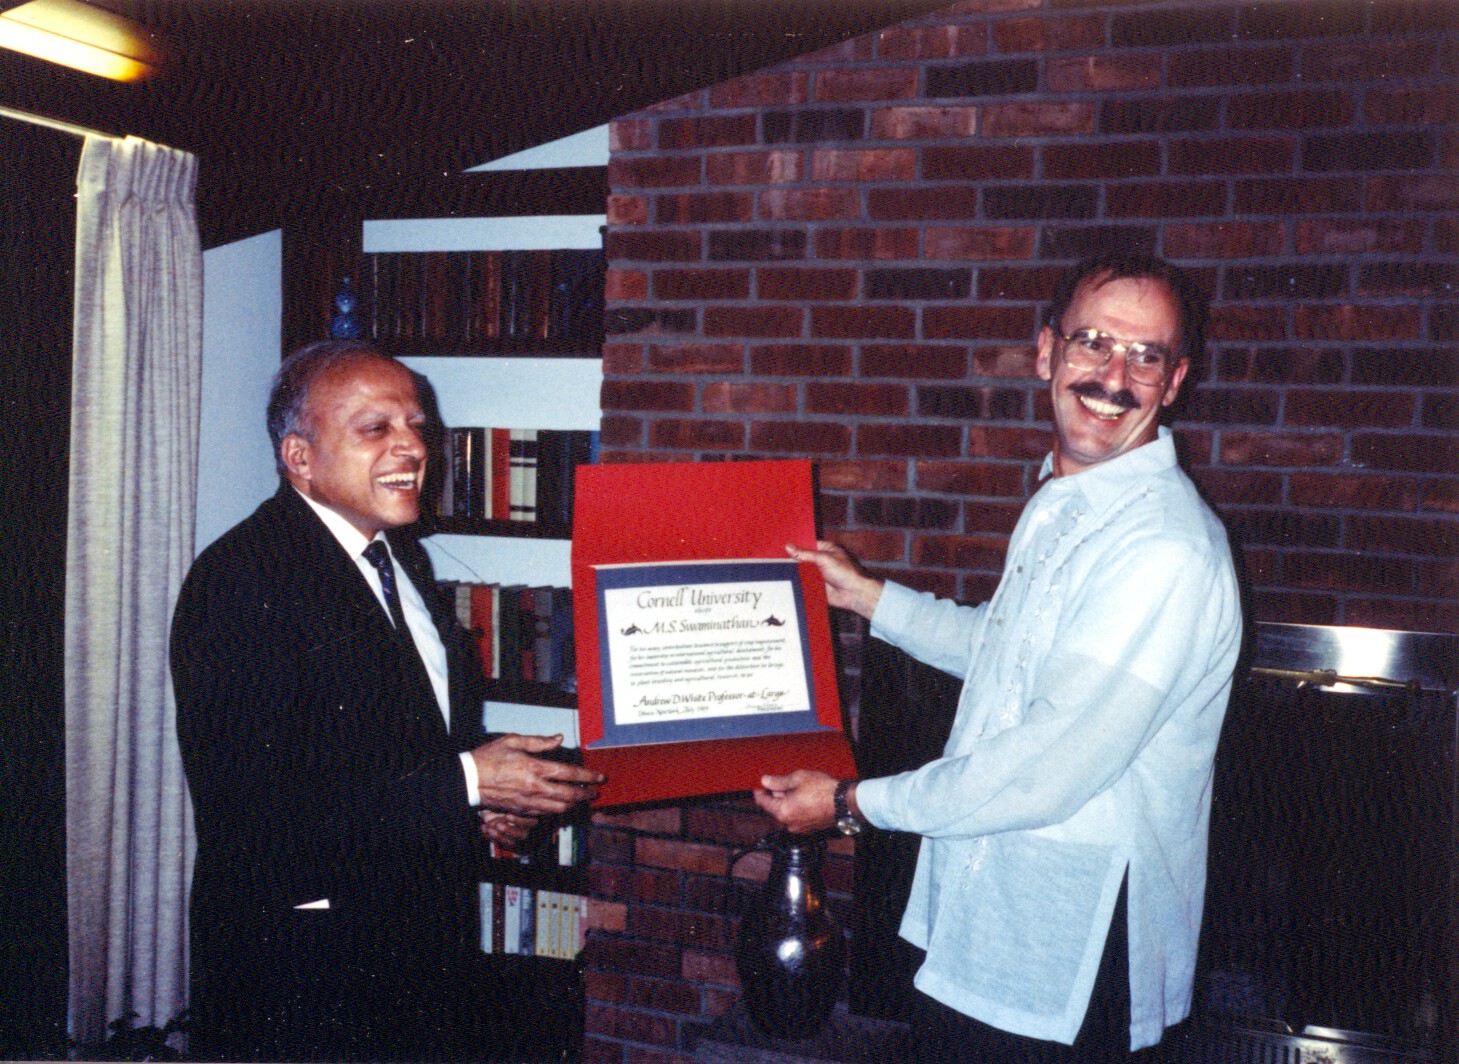 Ronnie Coffman receiving an award